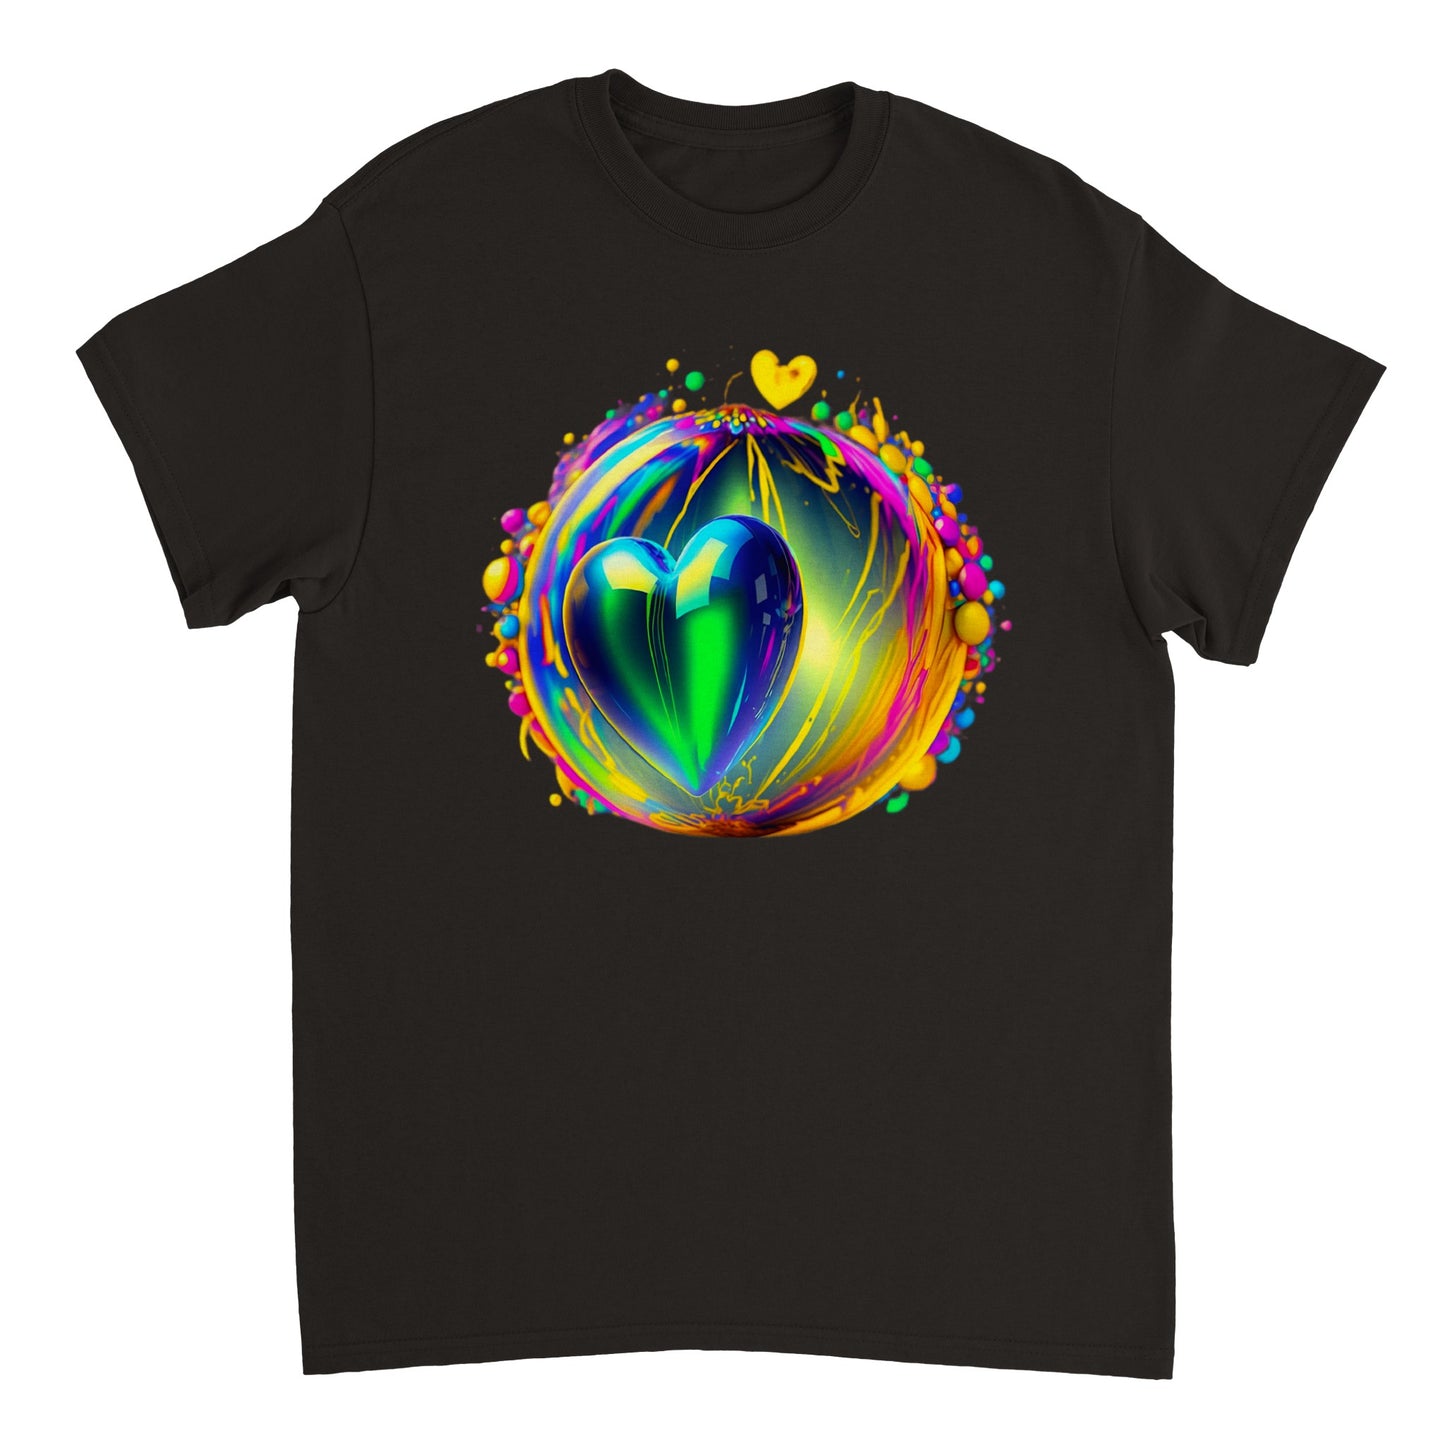 Love Heart - Heavyweight Unisex Crewneck T-shirt 79